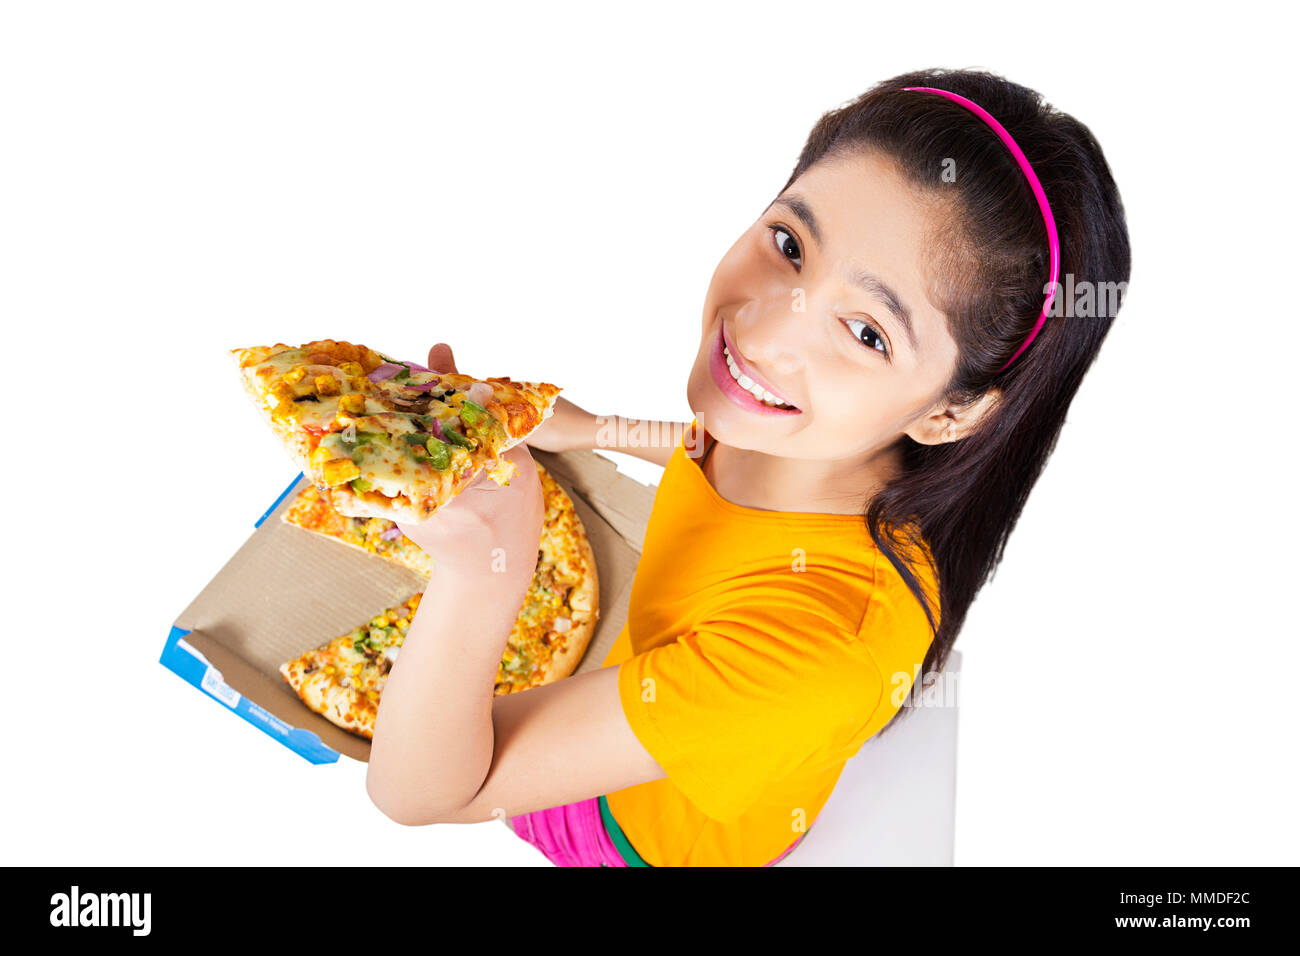 Lächelnd Zwei junge Teen Girl Holding Scheibe Lecker - Pizza Essen Stockfoto